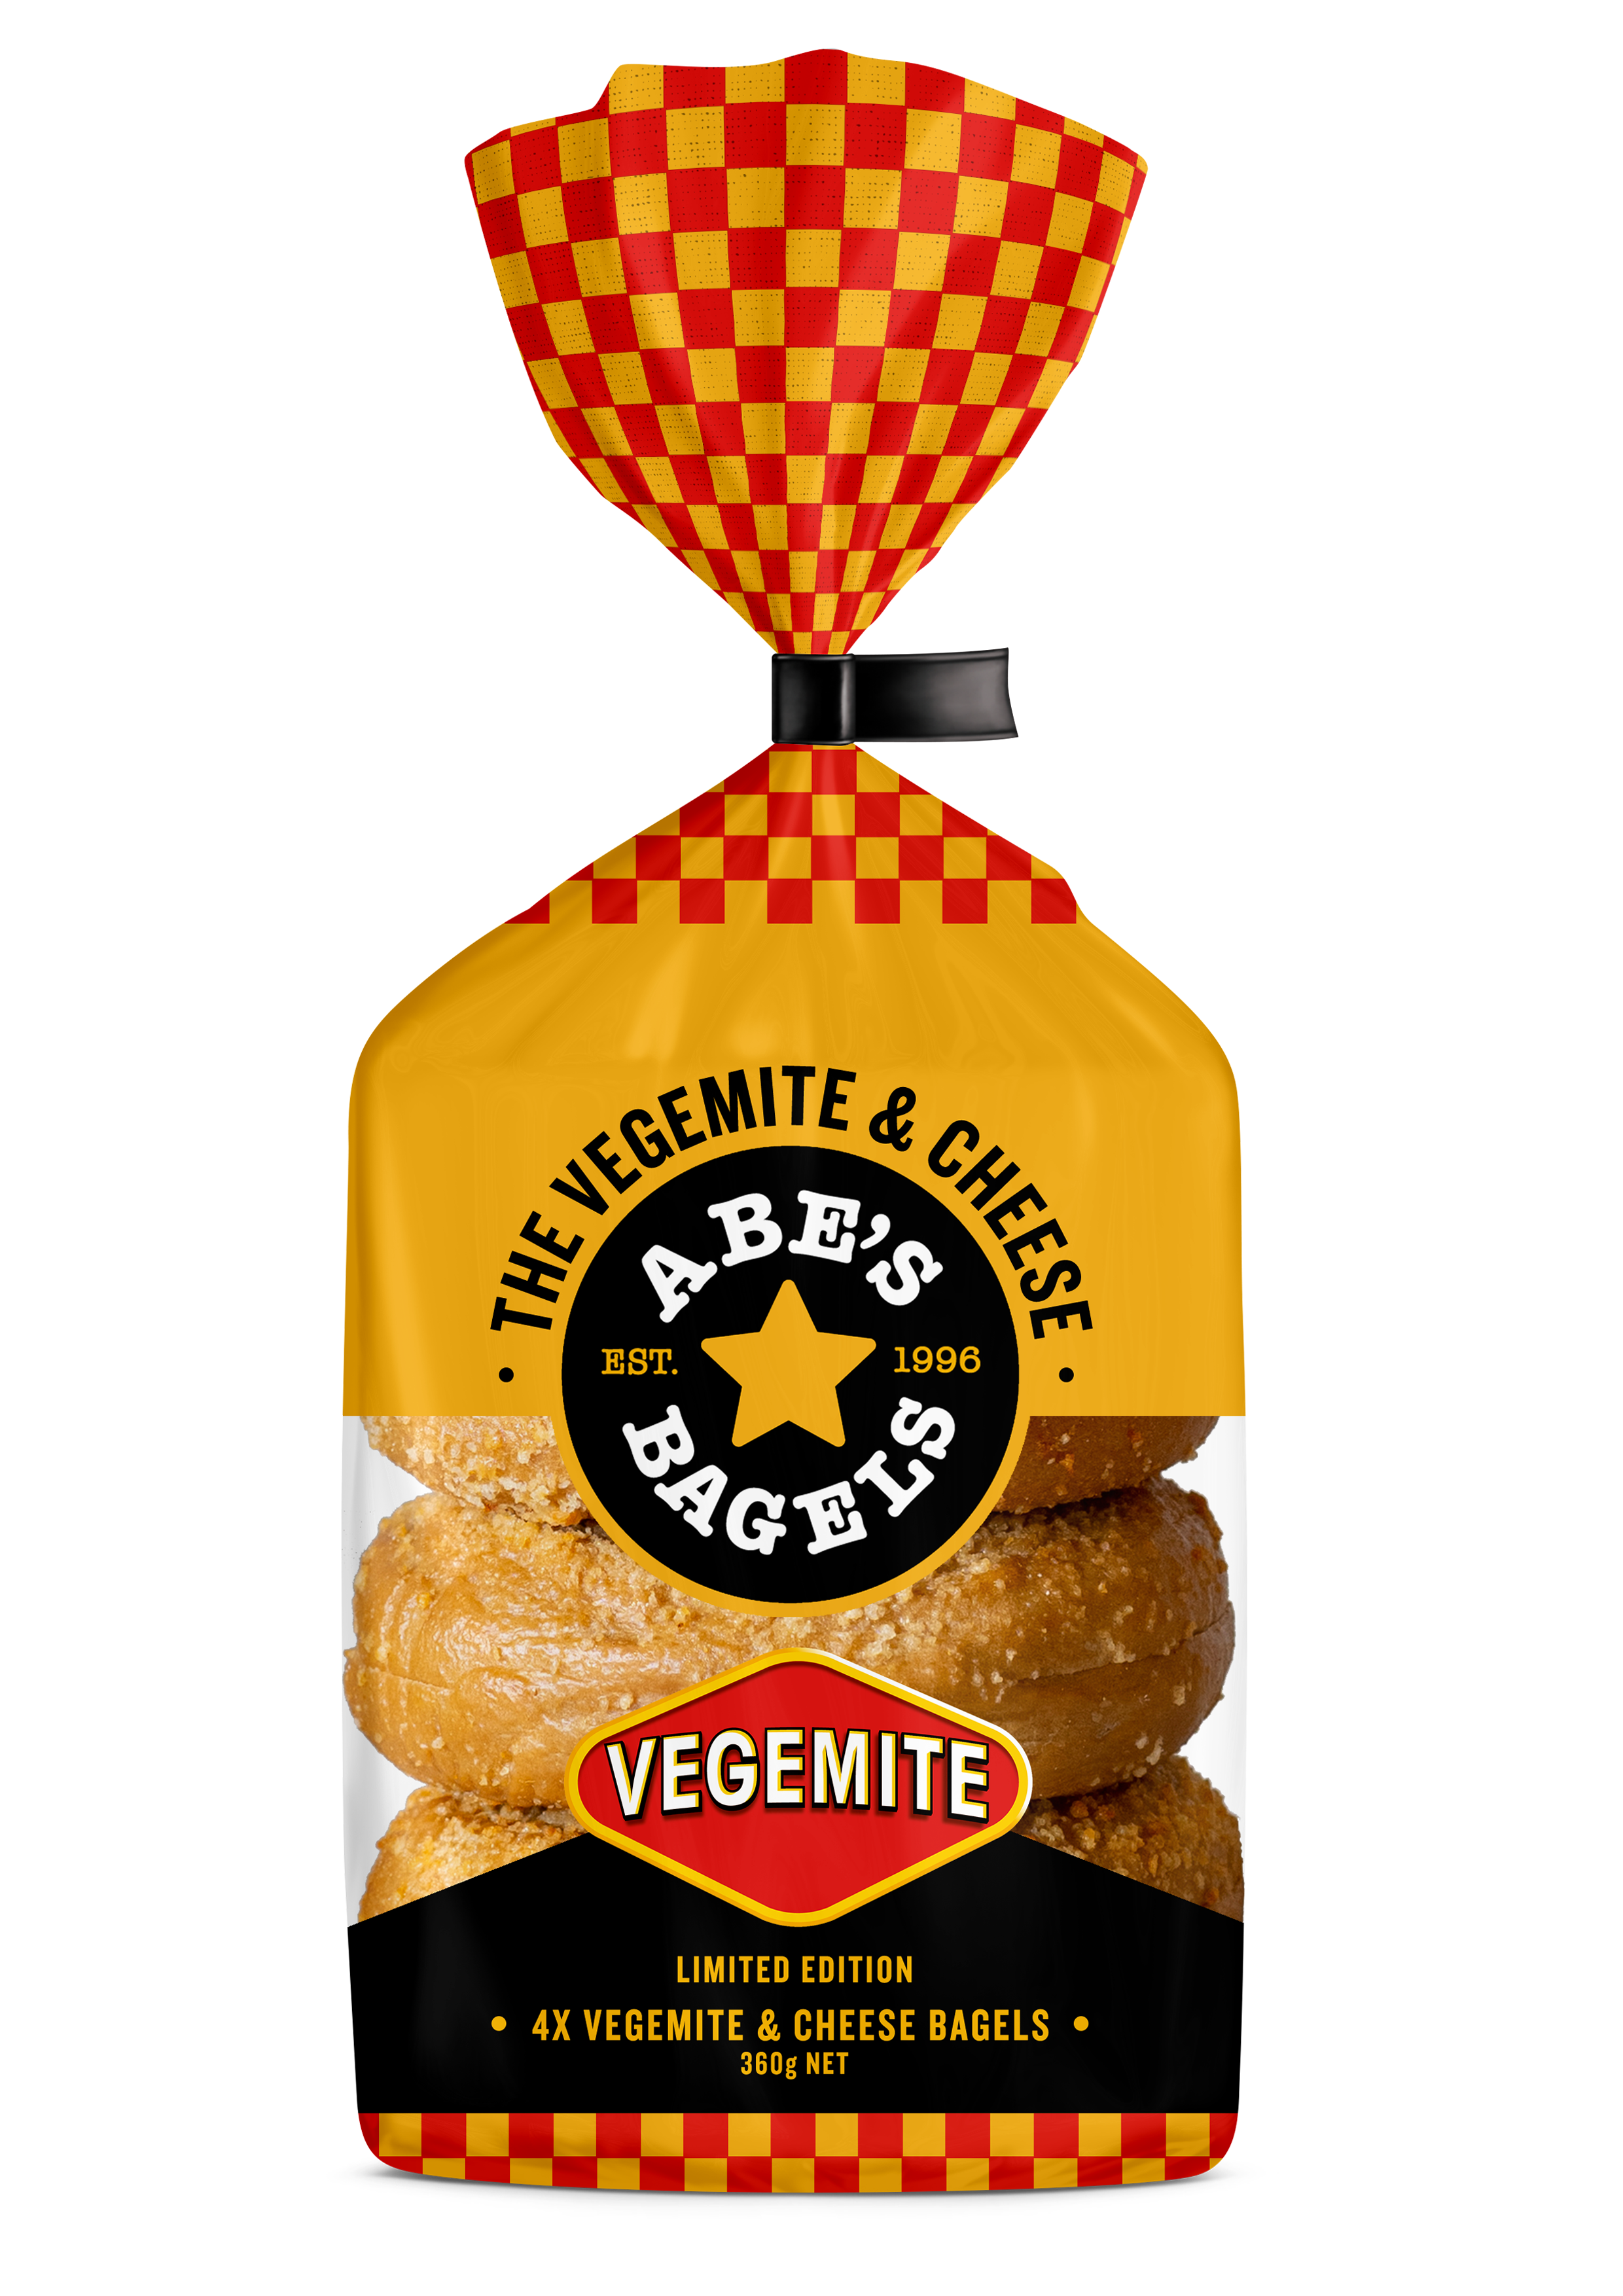 The VEGEMITE & Cheese